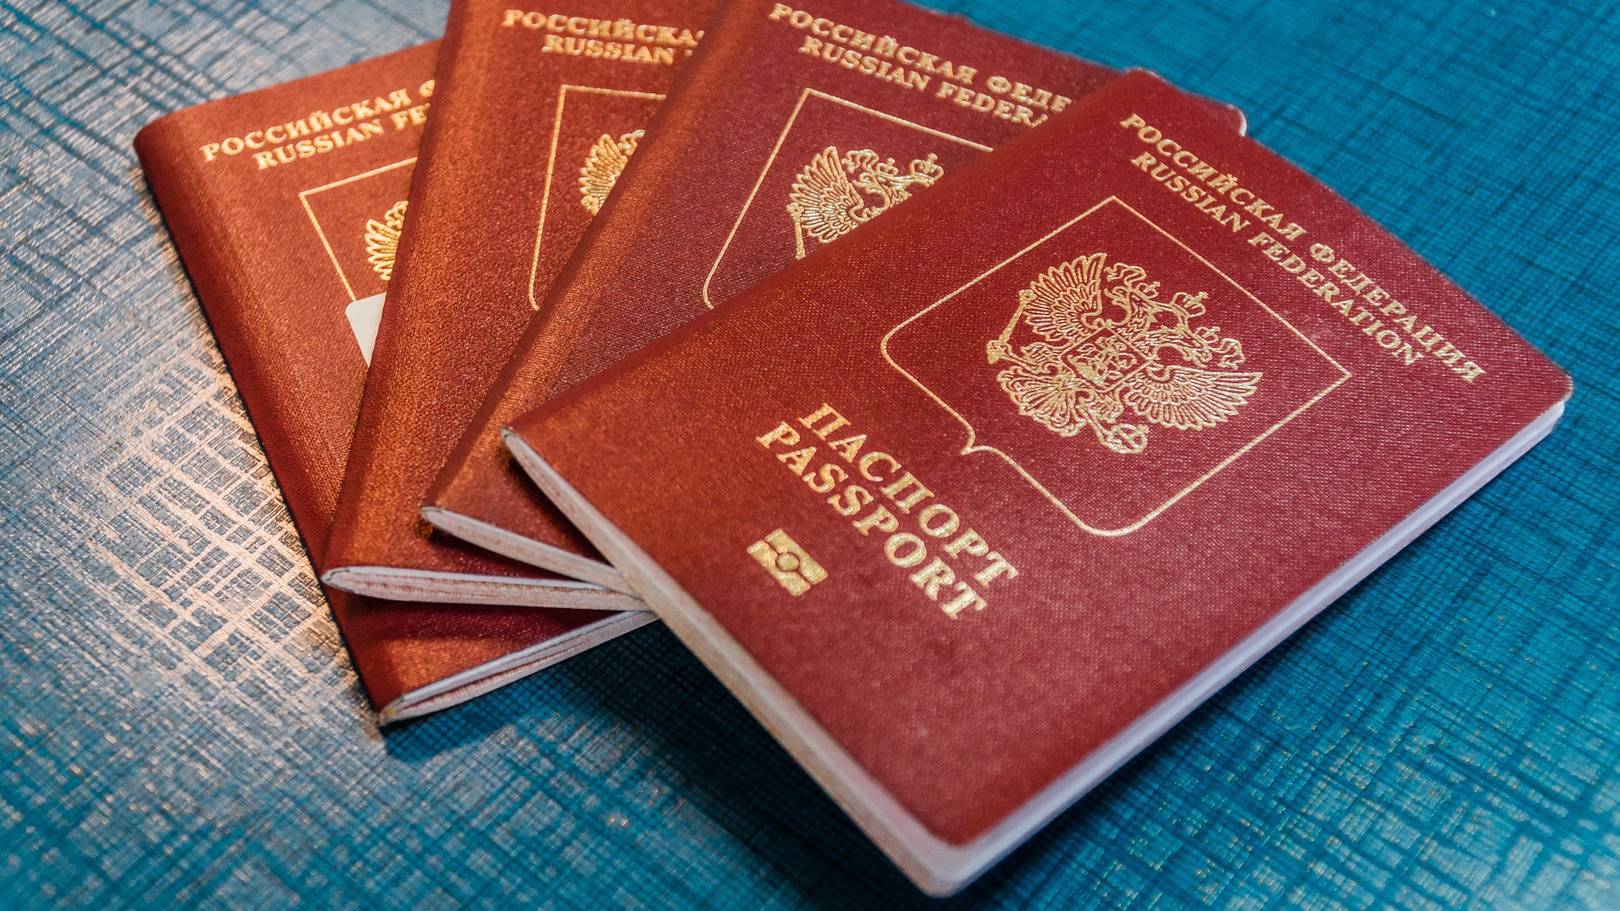 Нужен ли загранпаспорт для поездки в беларусь в 2020 году — внимательный взгляд на вопрос